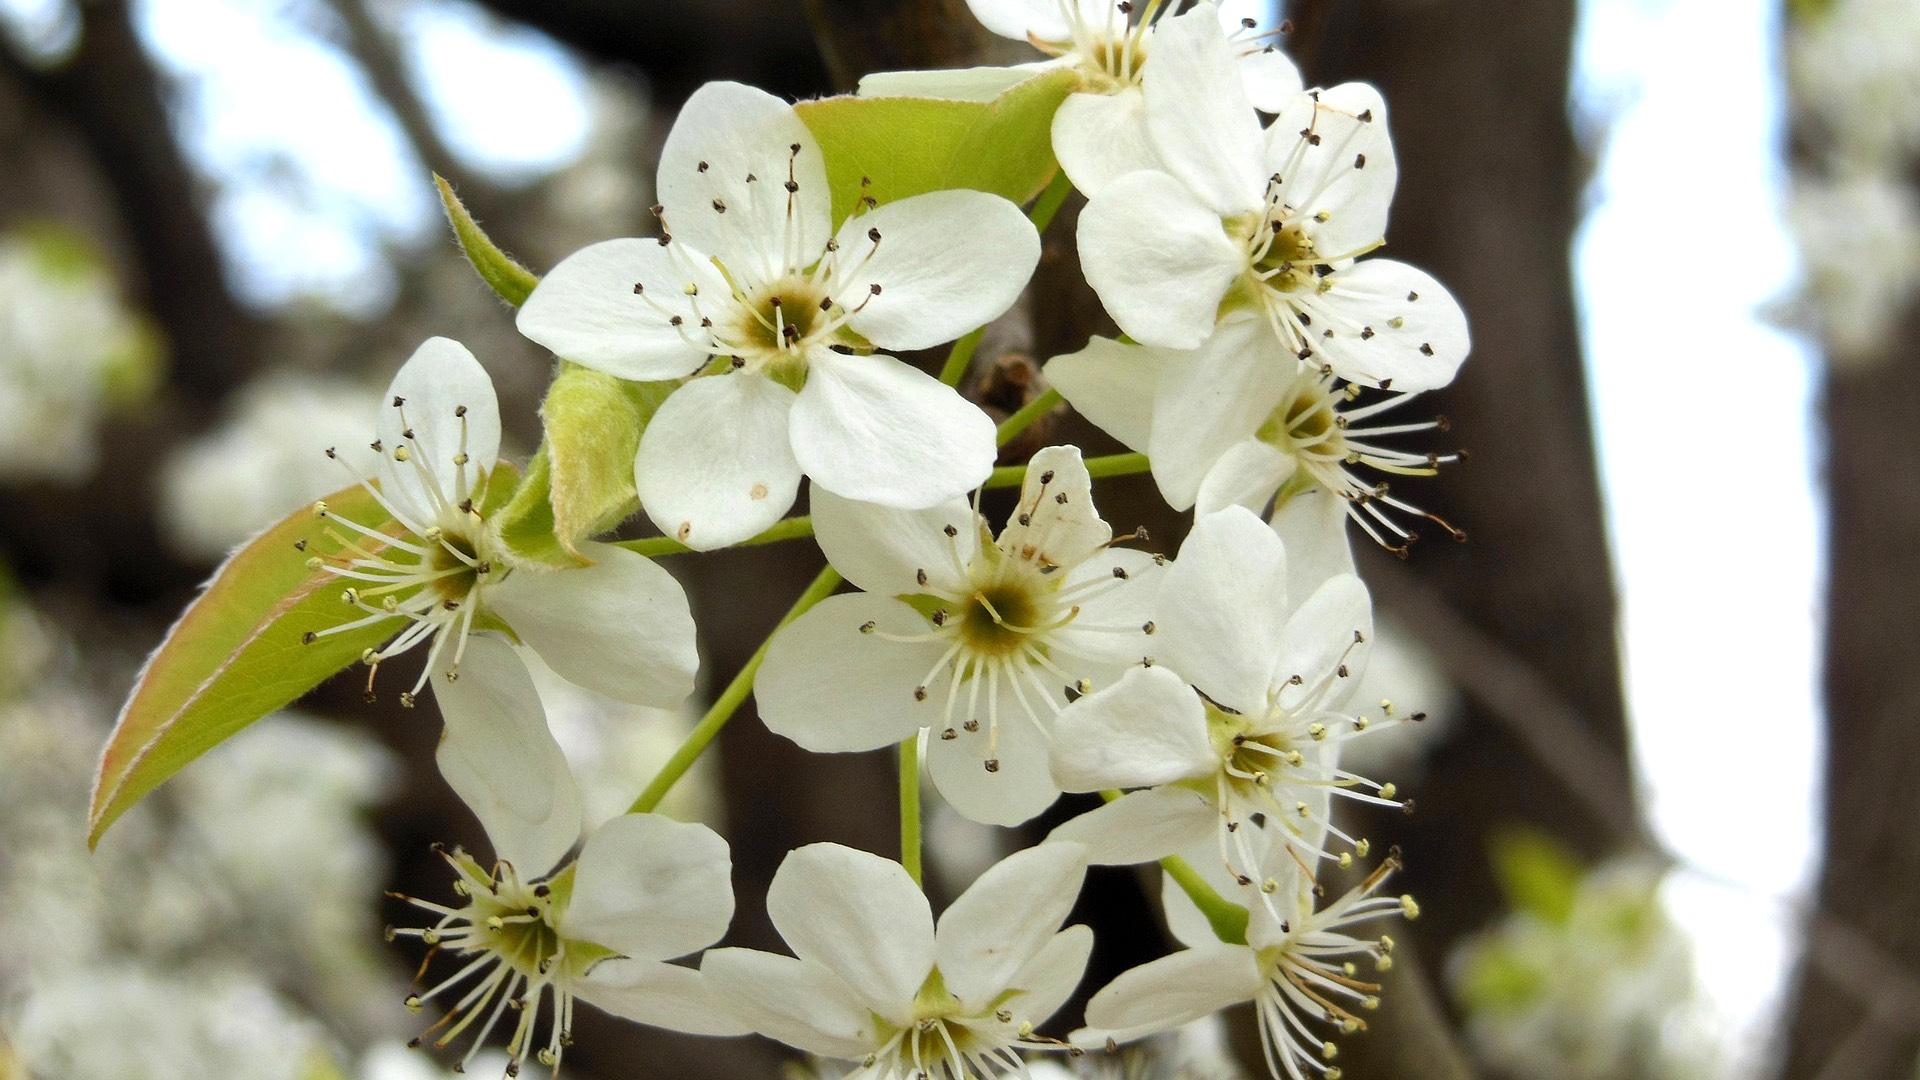 Callery pear blossoms. (sharonshuping0 / Pixabay)